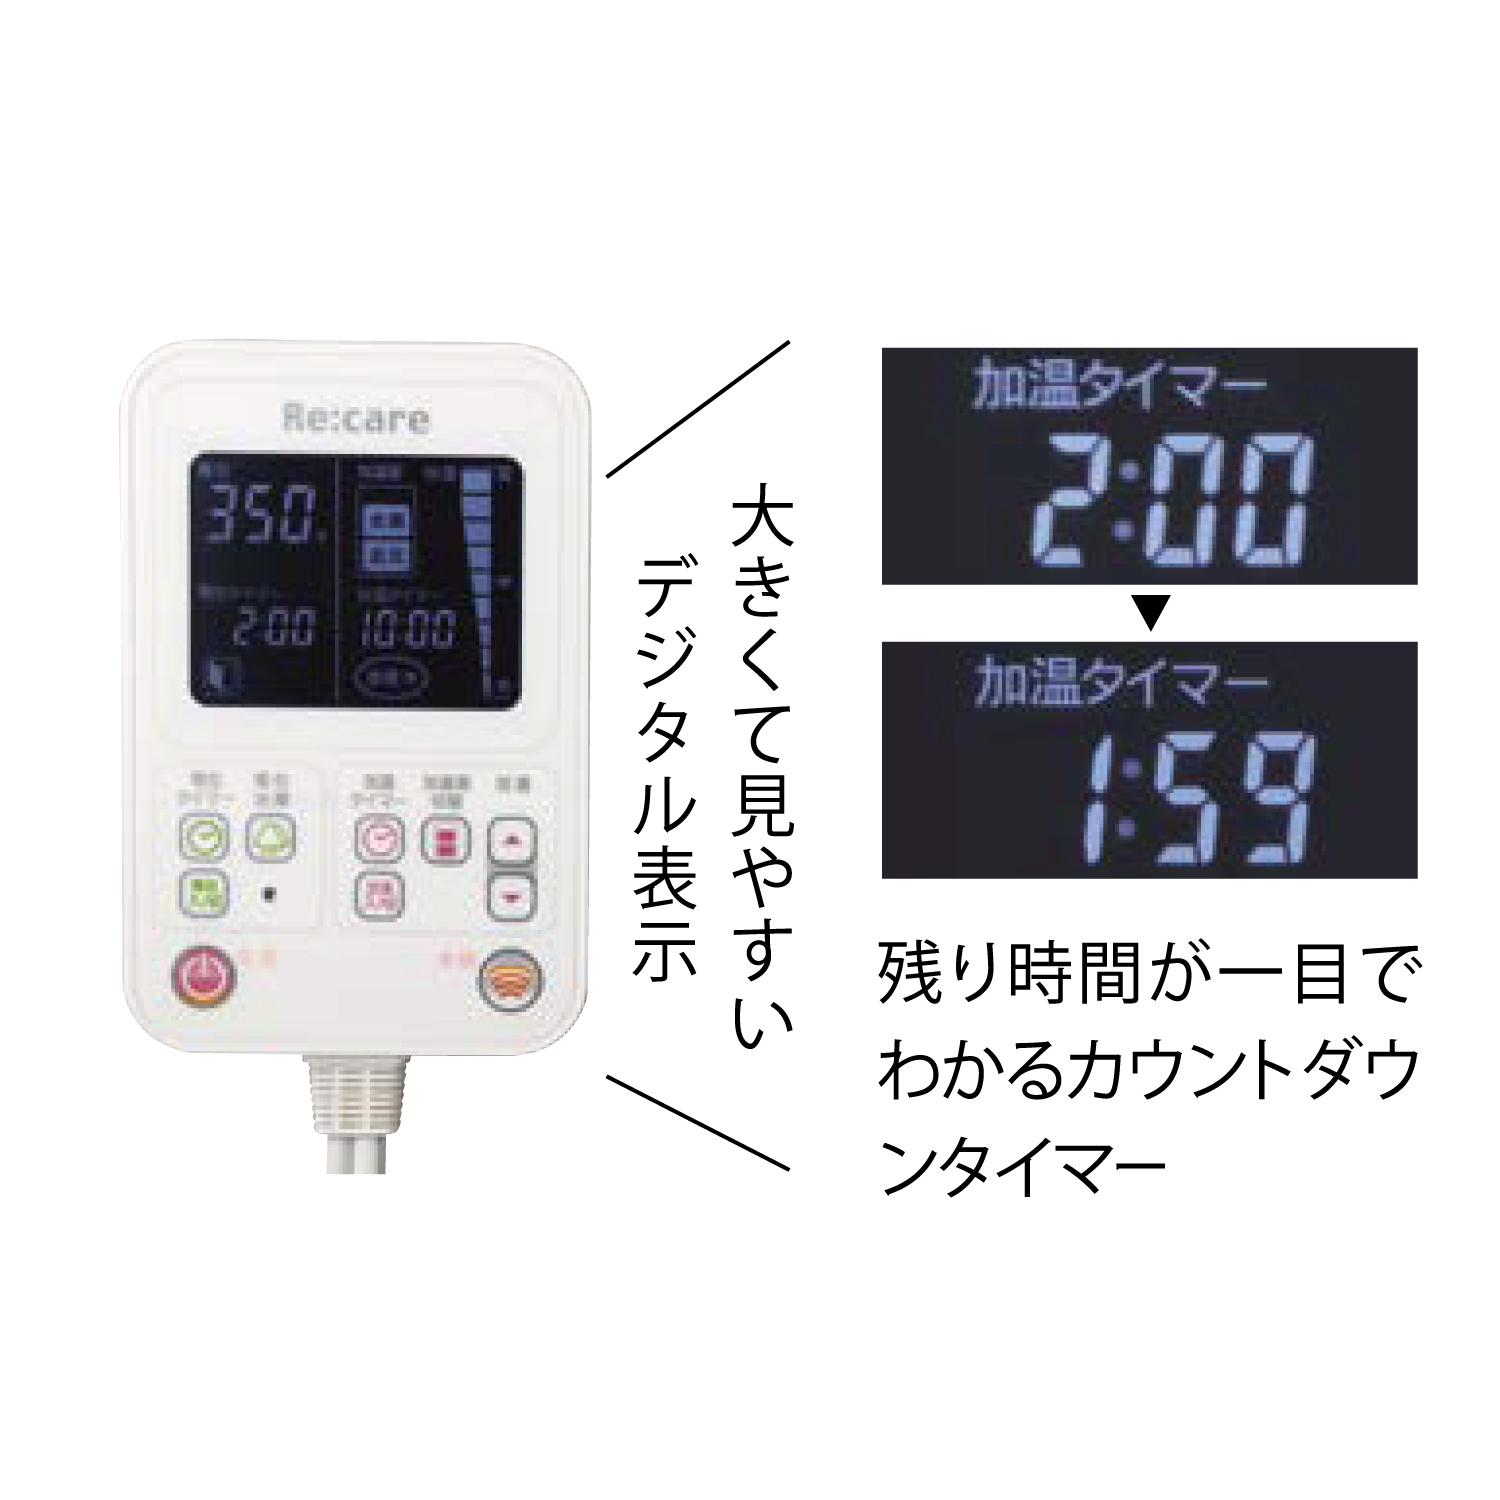 【西川】家庭用電位治療器リケア セミダブル